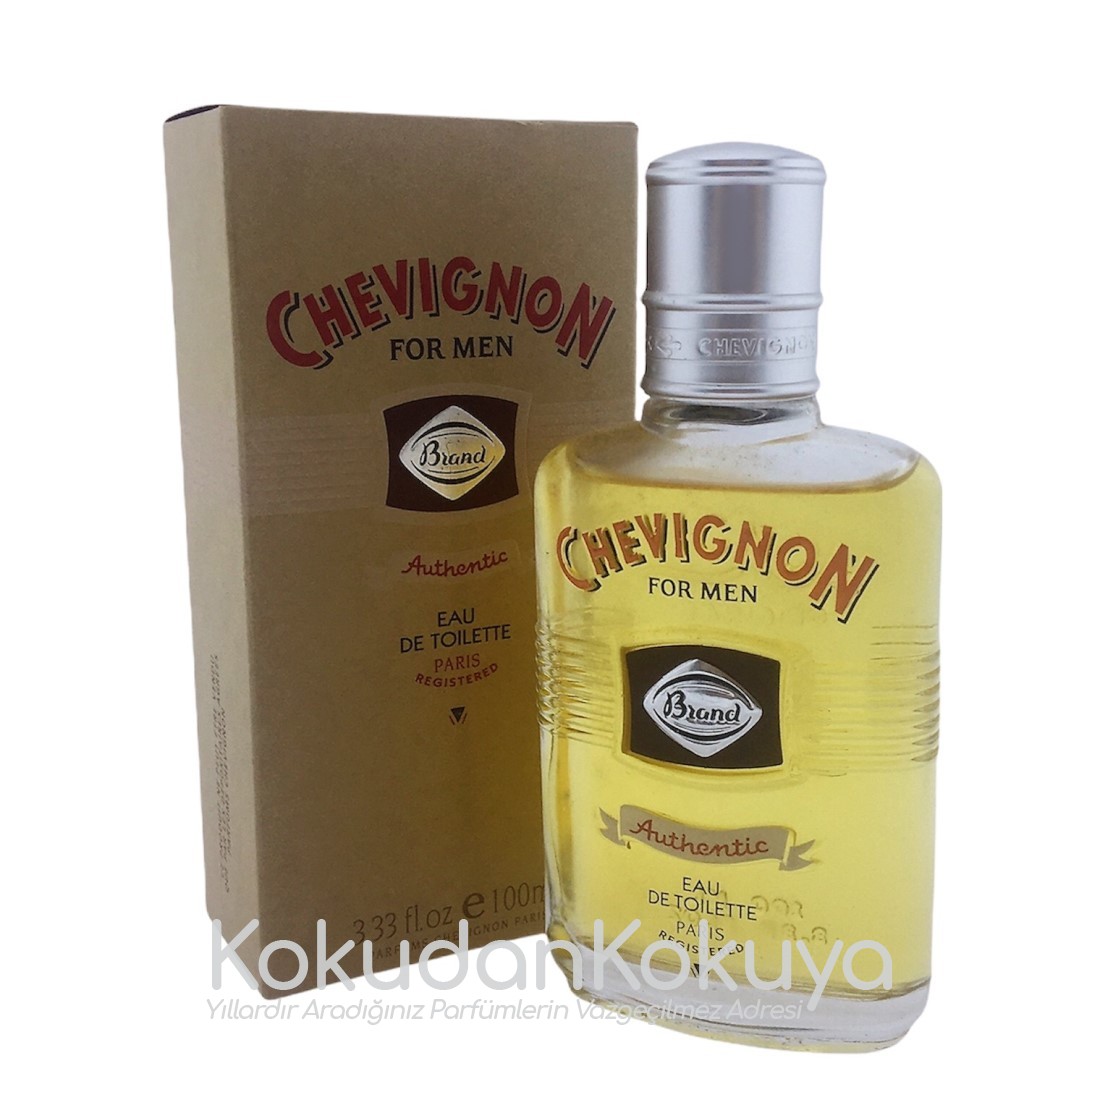 CHEVIGNON Brand for Men (Vintage) Parfüm Erkek 100ml Eau De Toilette (EDT) Dökme 